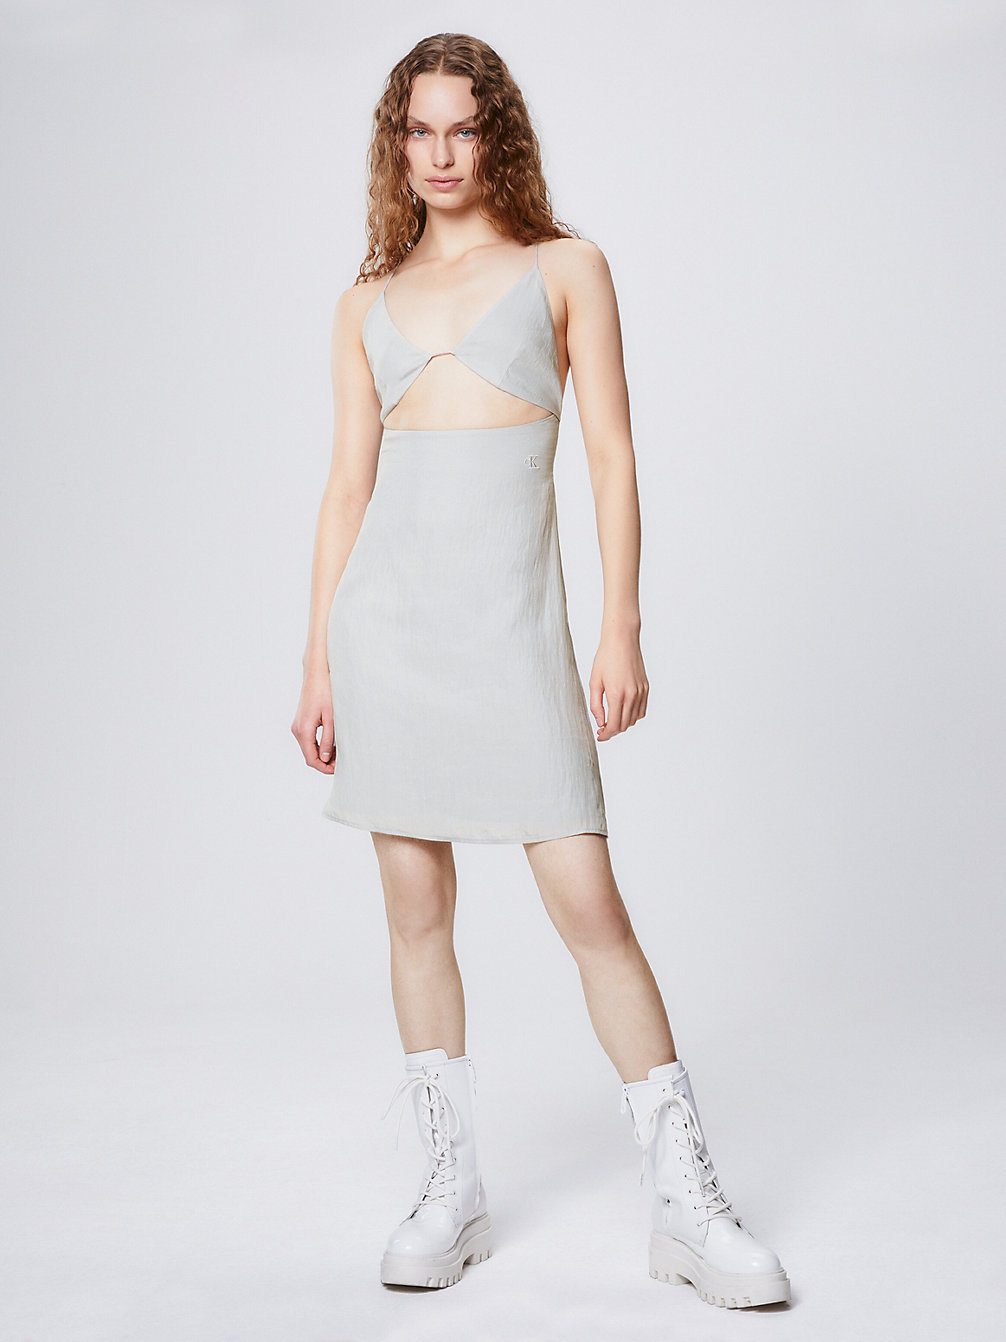 ZINC ALLOY High Shine Cut Out Slip Dress undefined women Calvin Klein